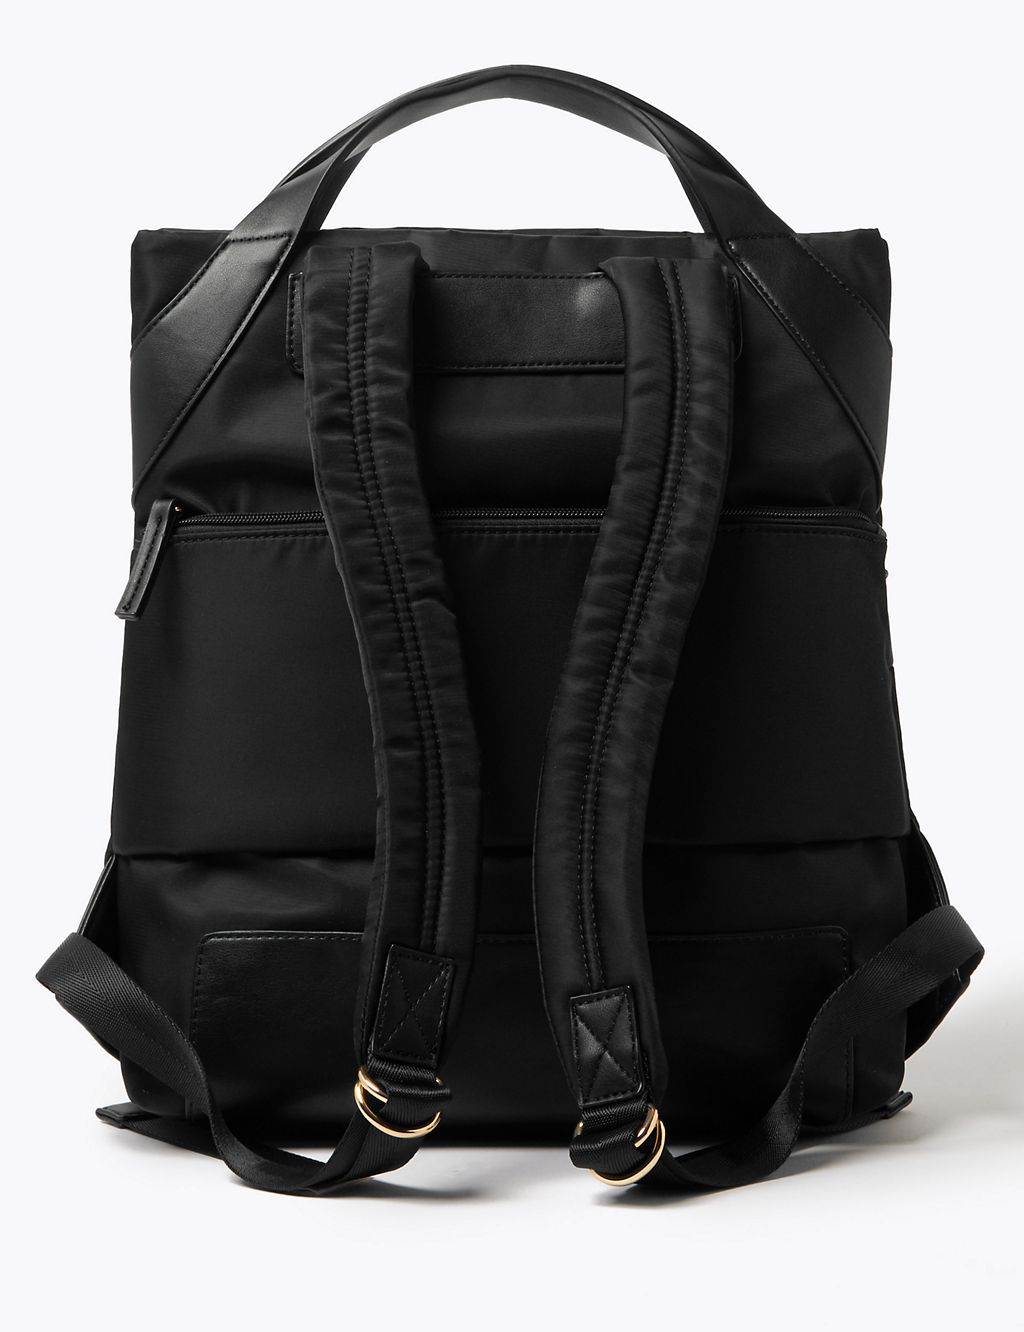 Backpack Bag 4 of 6